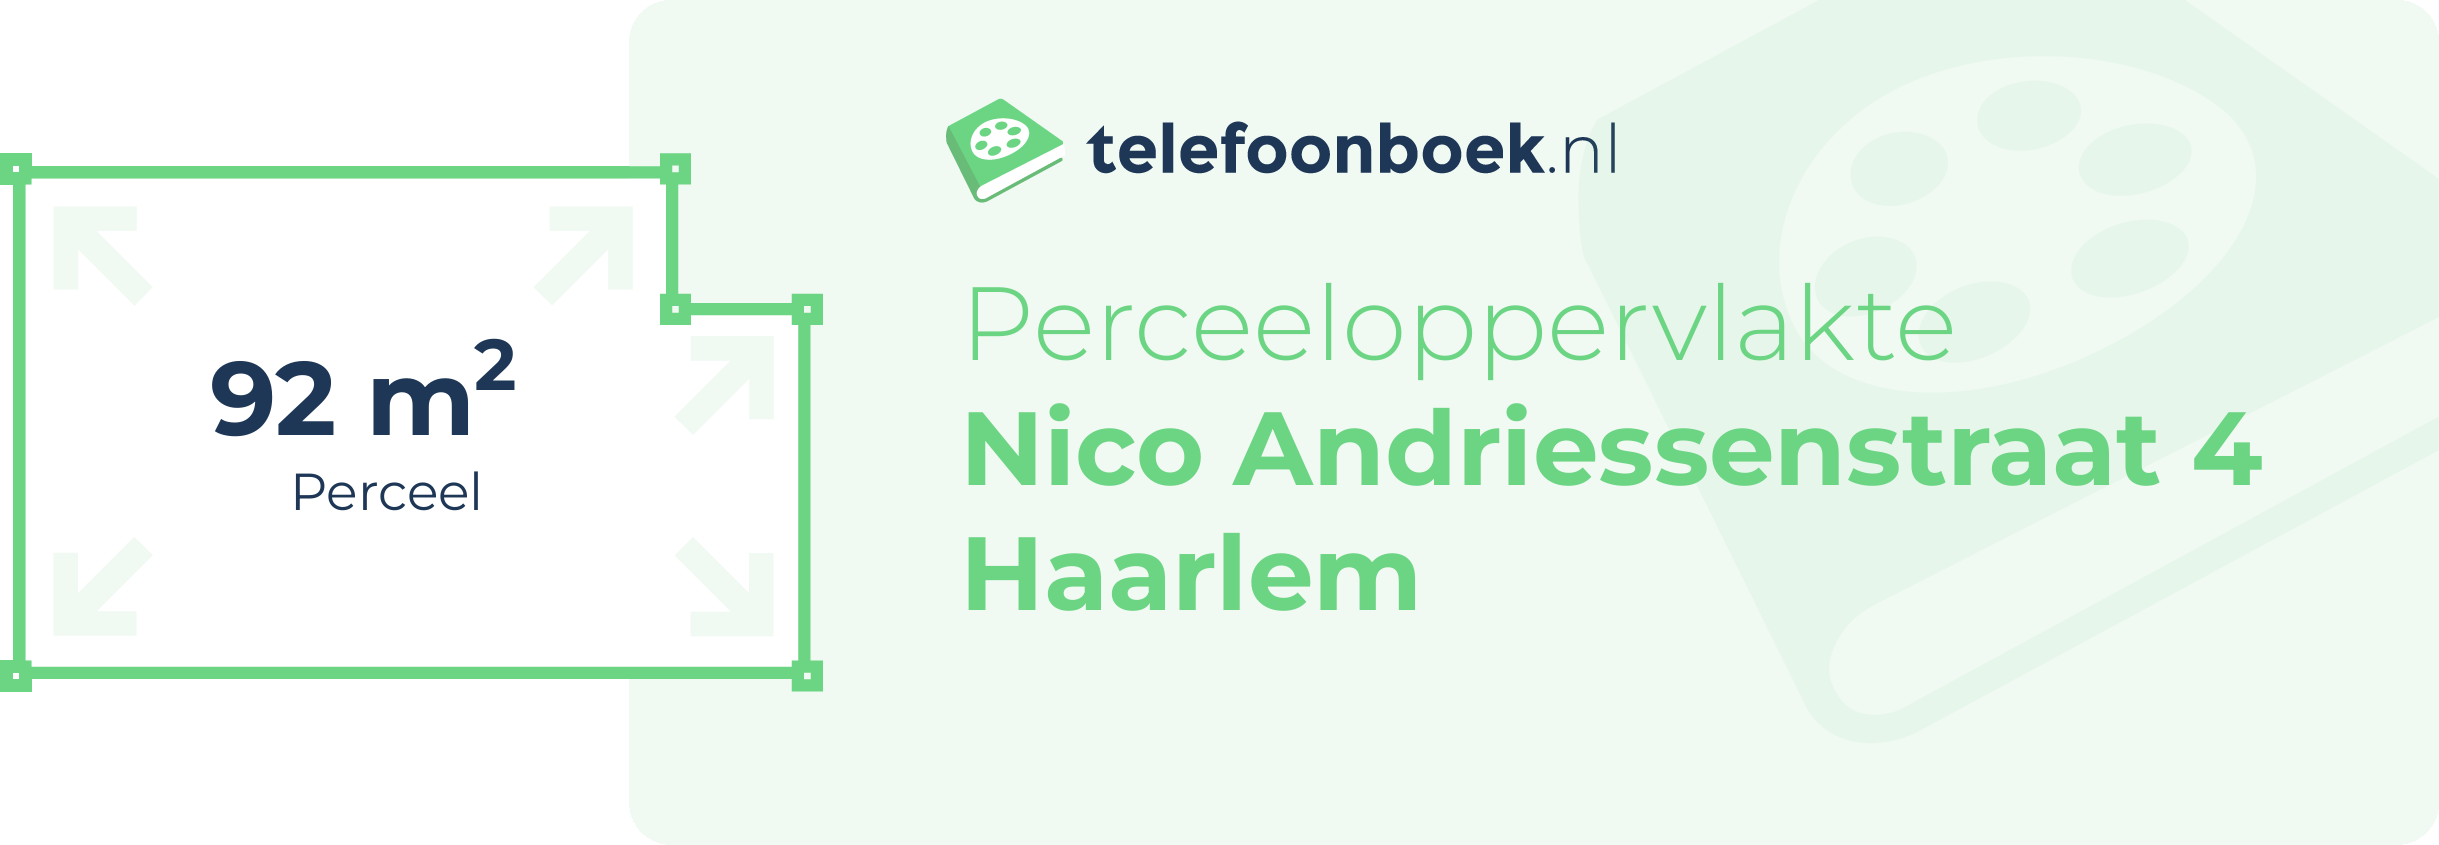 Perceeloppervlakte Nico Andriessenstraat 4 Haarlem